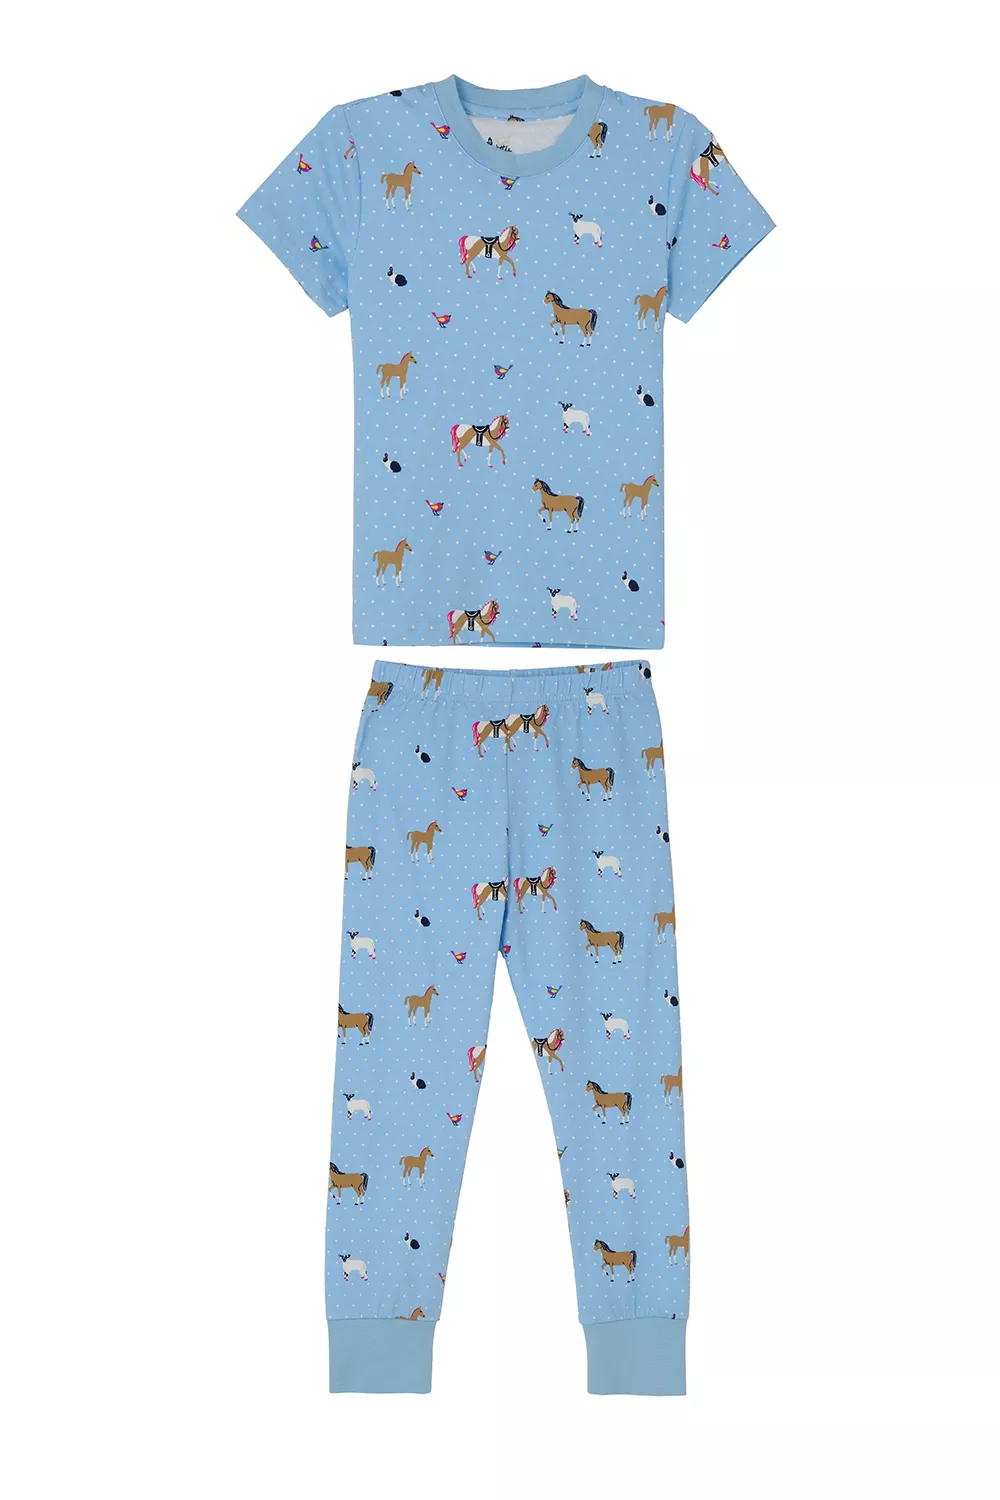 Girls Pyjamas Blue Animal Print 4-5yrs